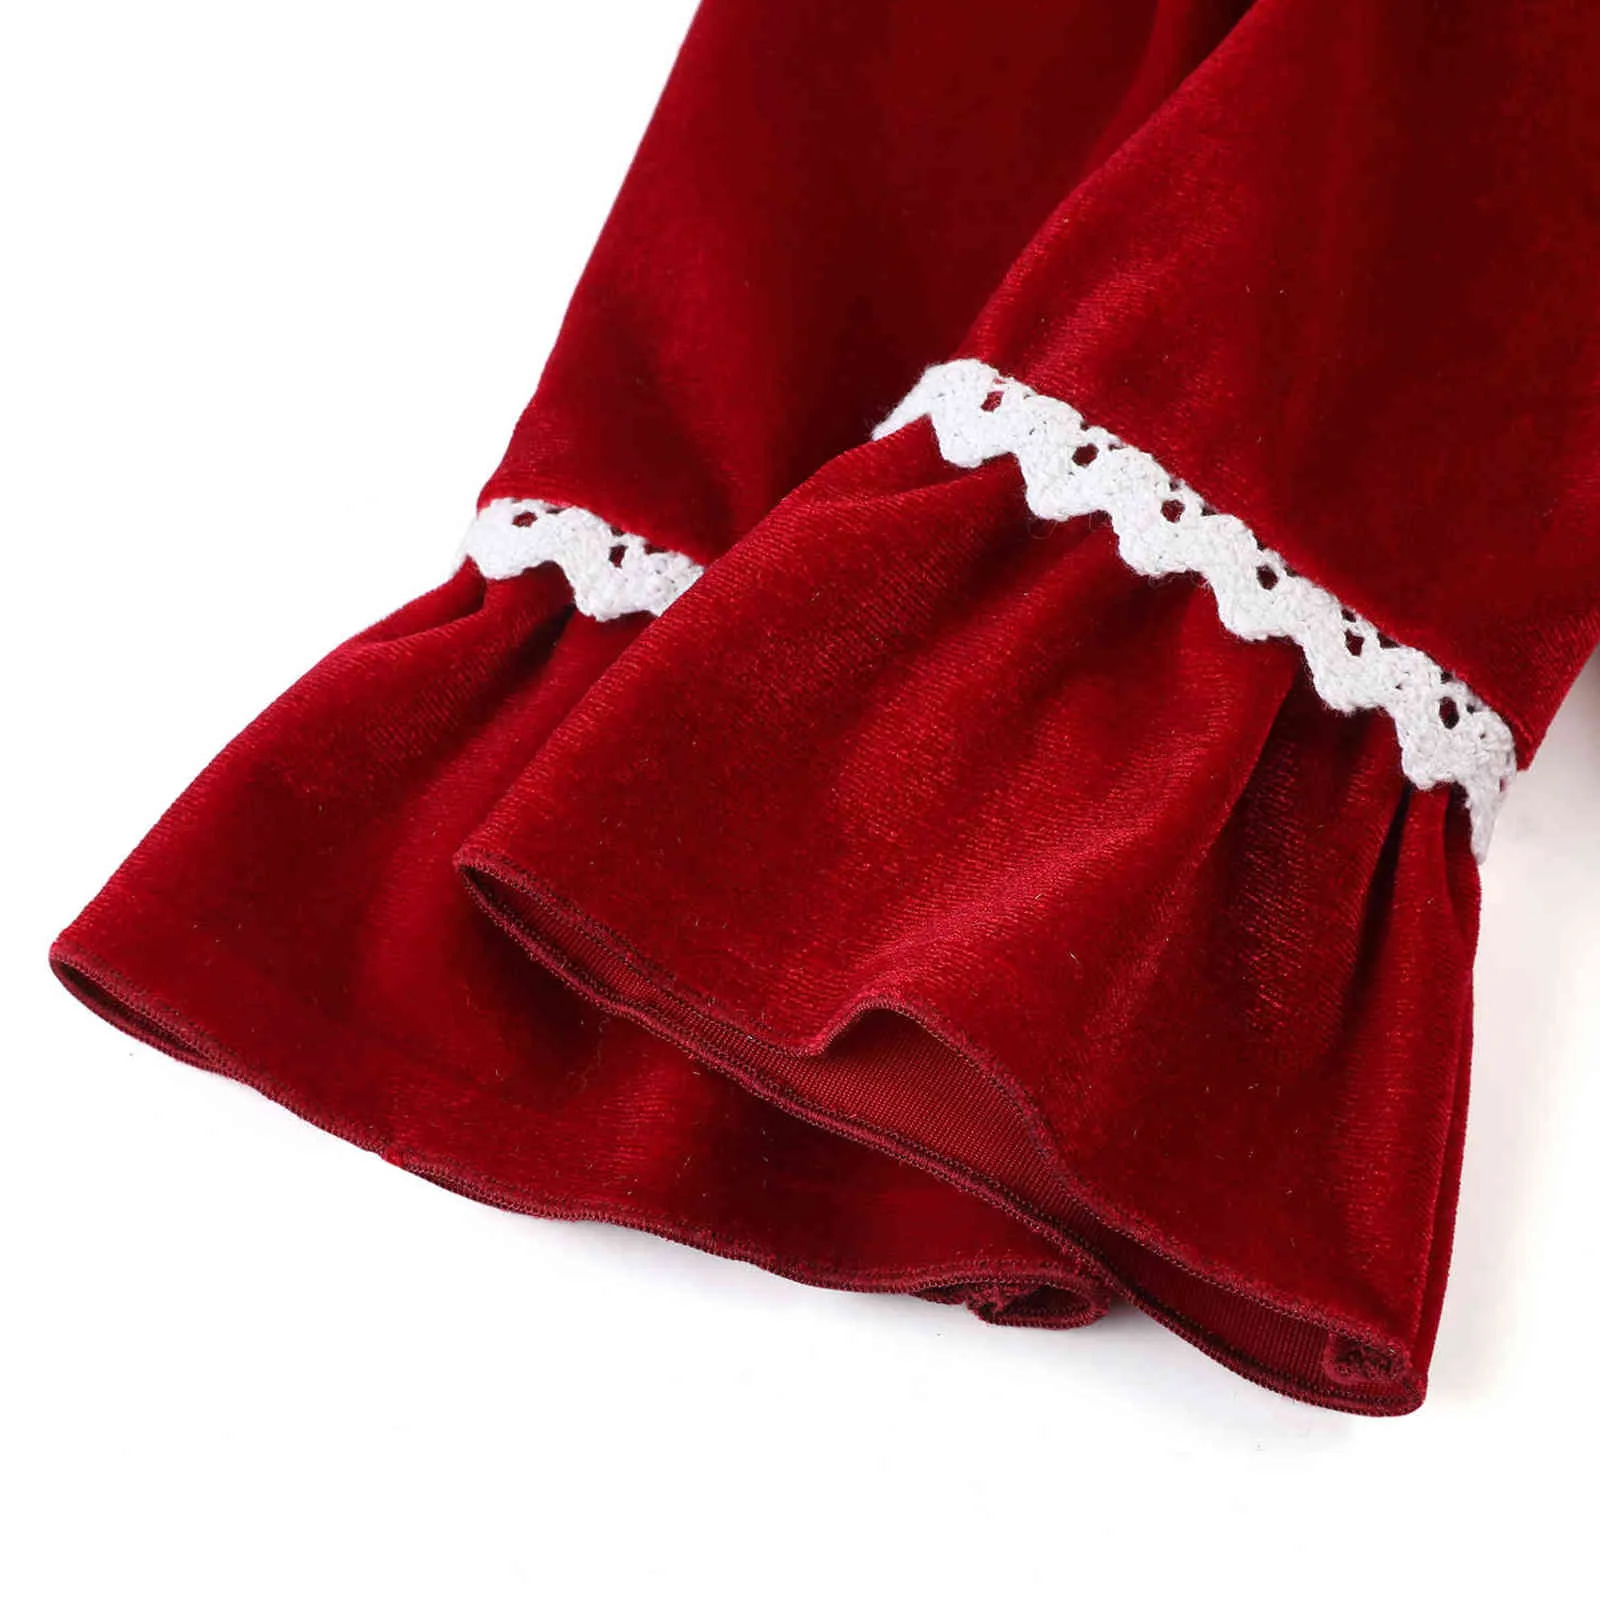 Xmas pjs röd sammet knapp upp julpyjamas barn sömnkläder matchande pj flickor pijama set 2111097858720